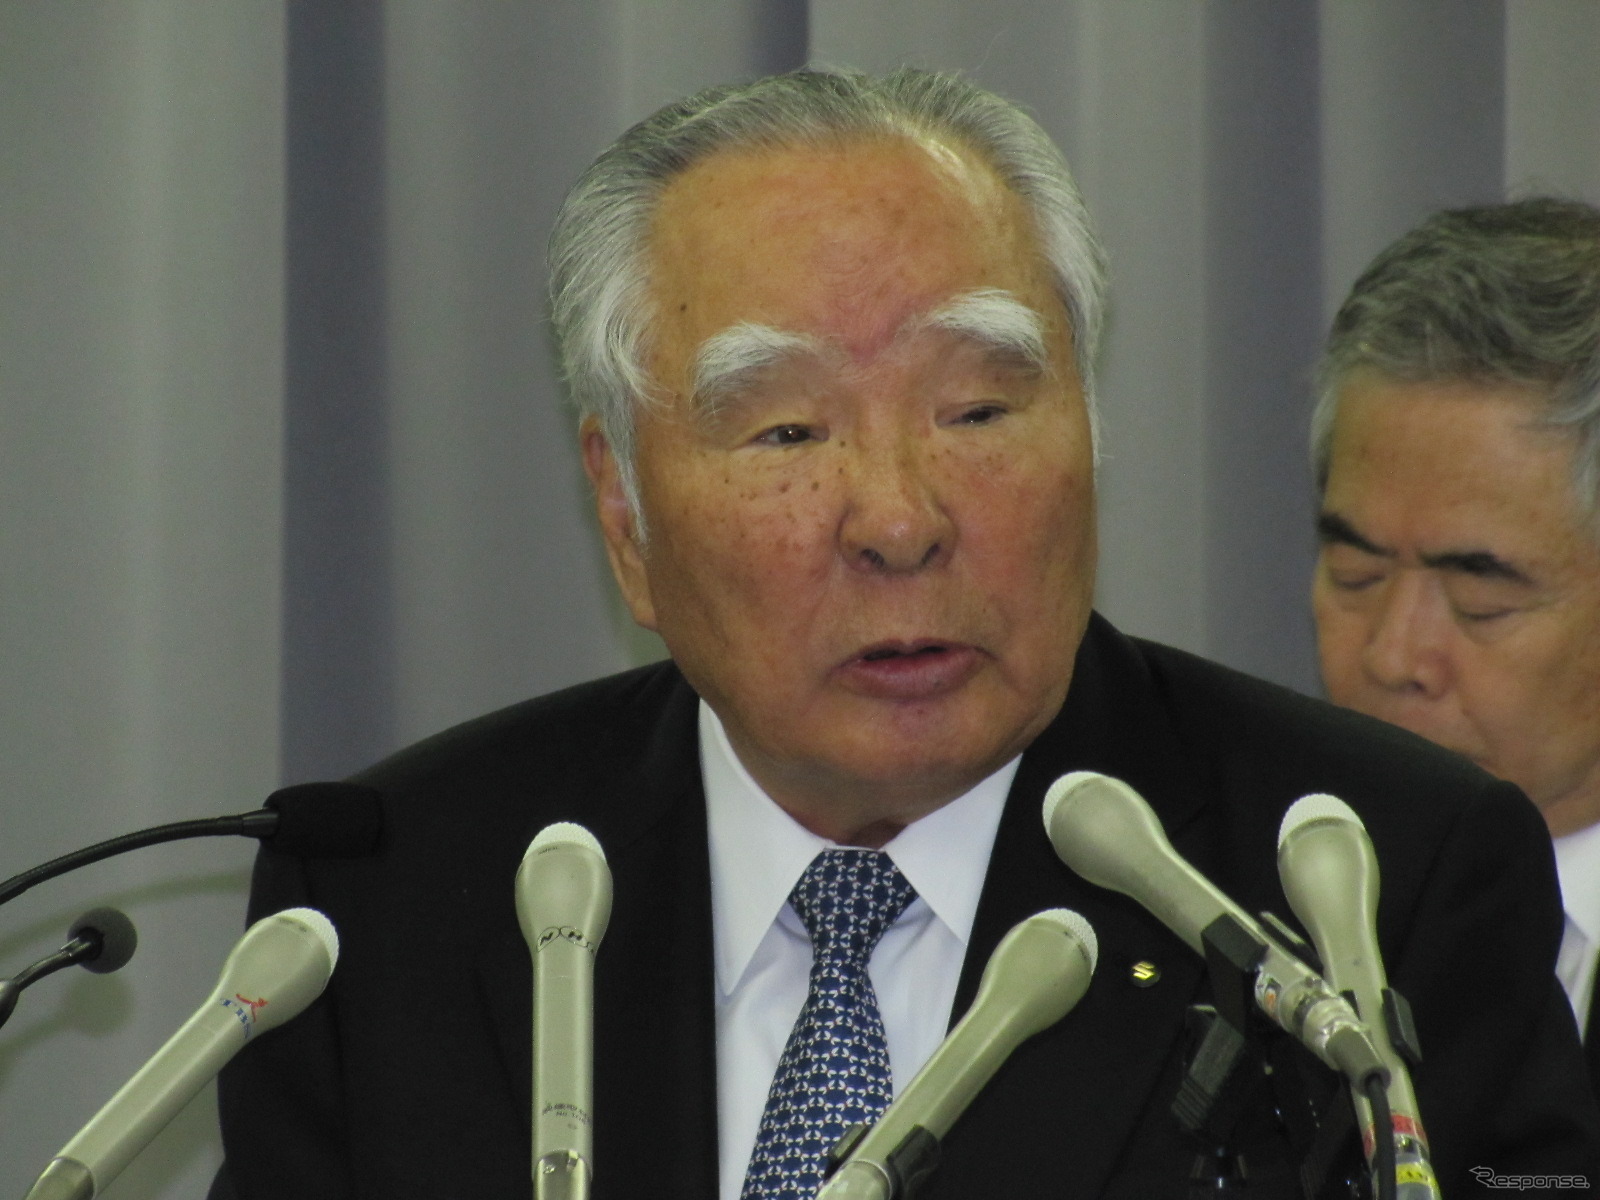 スズキ鈴木会長「二輪事業は今期こそ赤字ゼロに」